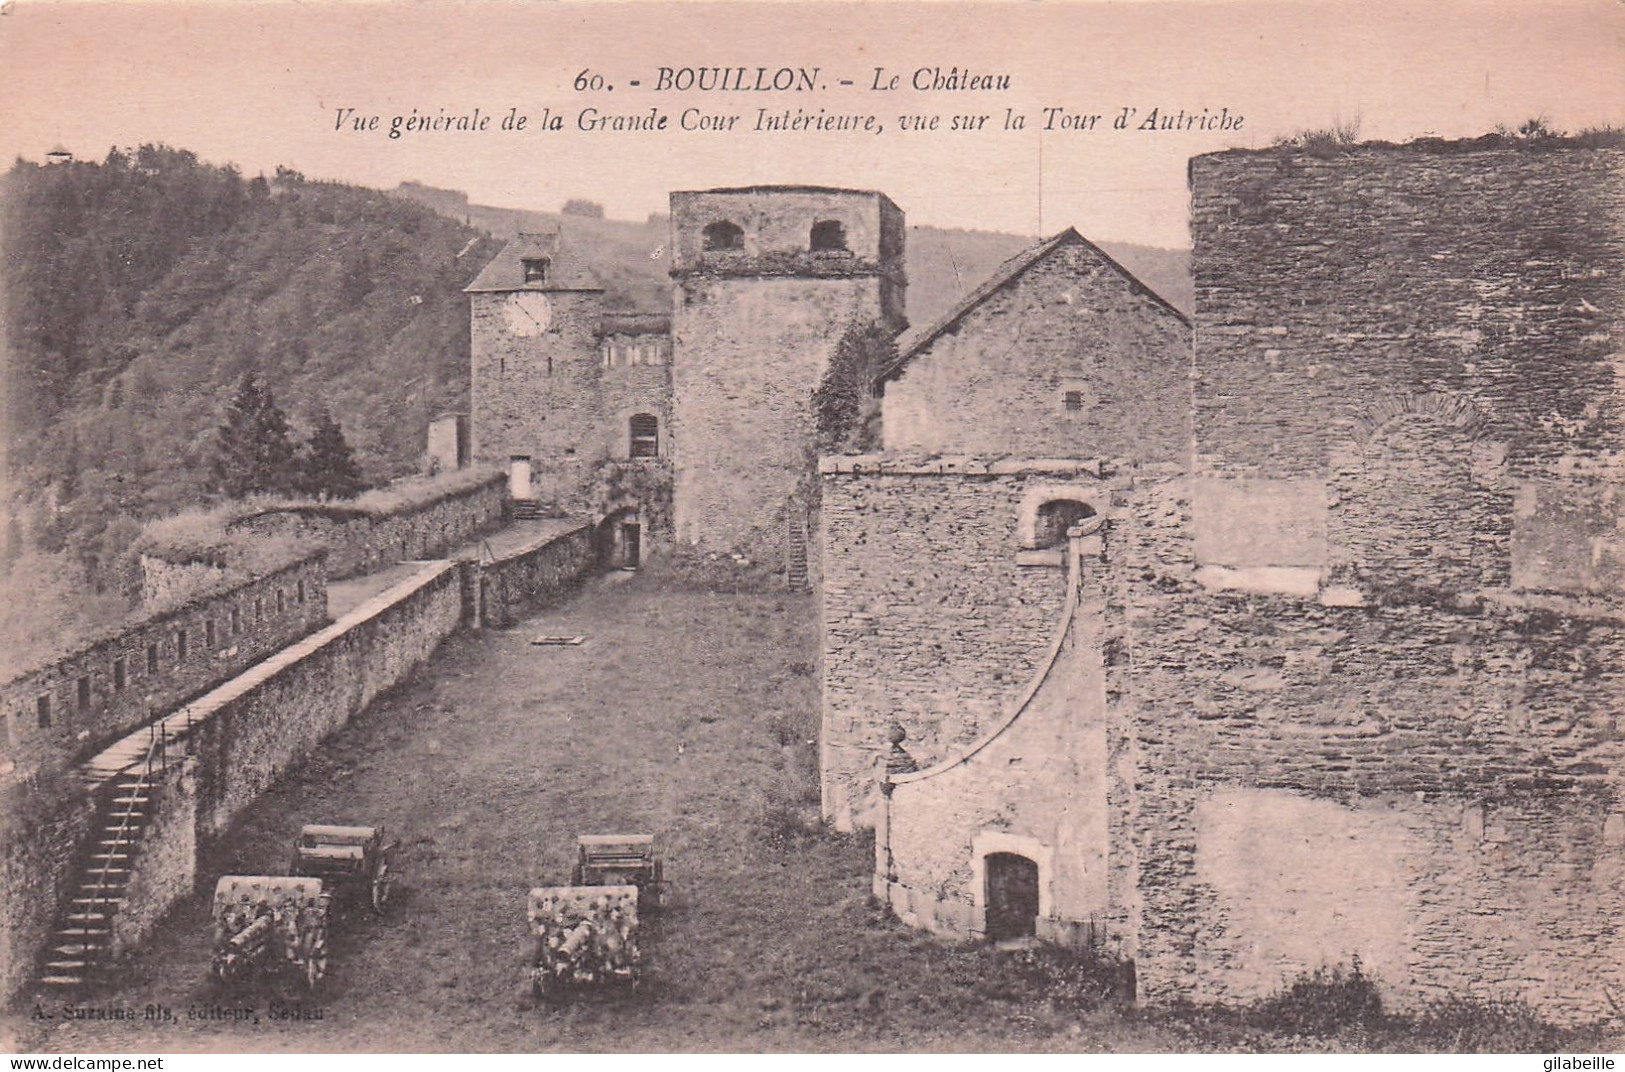  BOUILLON  - Le Chateau - Vue Generale De La Grande Cour Interieure - Bouillon